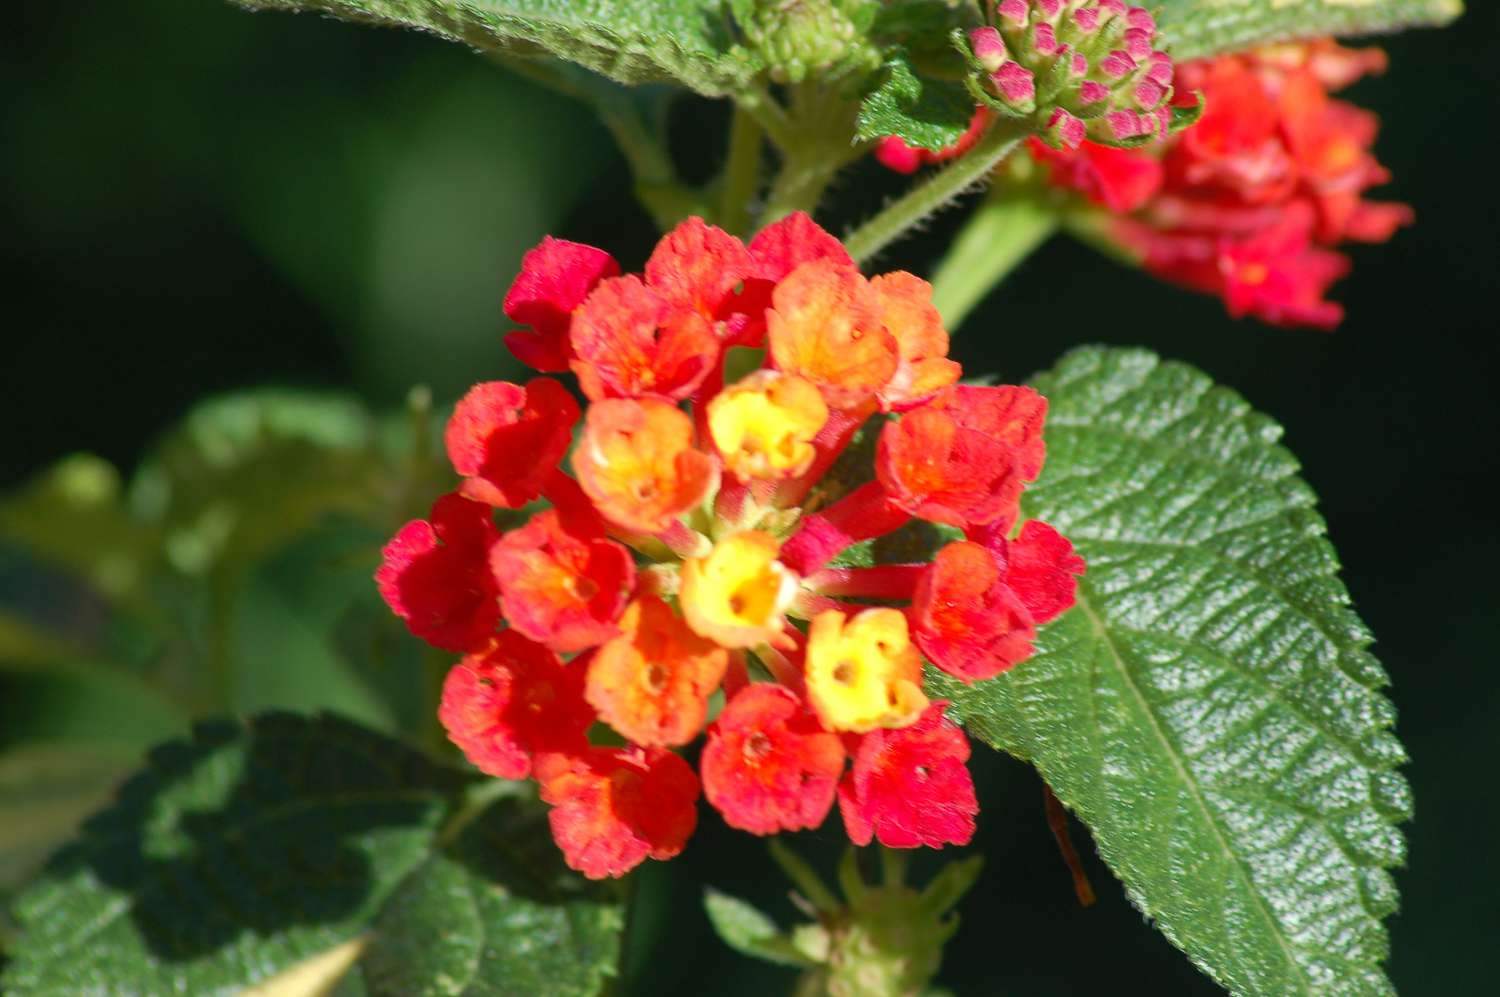 Lantana-Strauchzweig mit kleinen roten und gelben Blütenbüscheln neben Blättern in Nahaufnahme